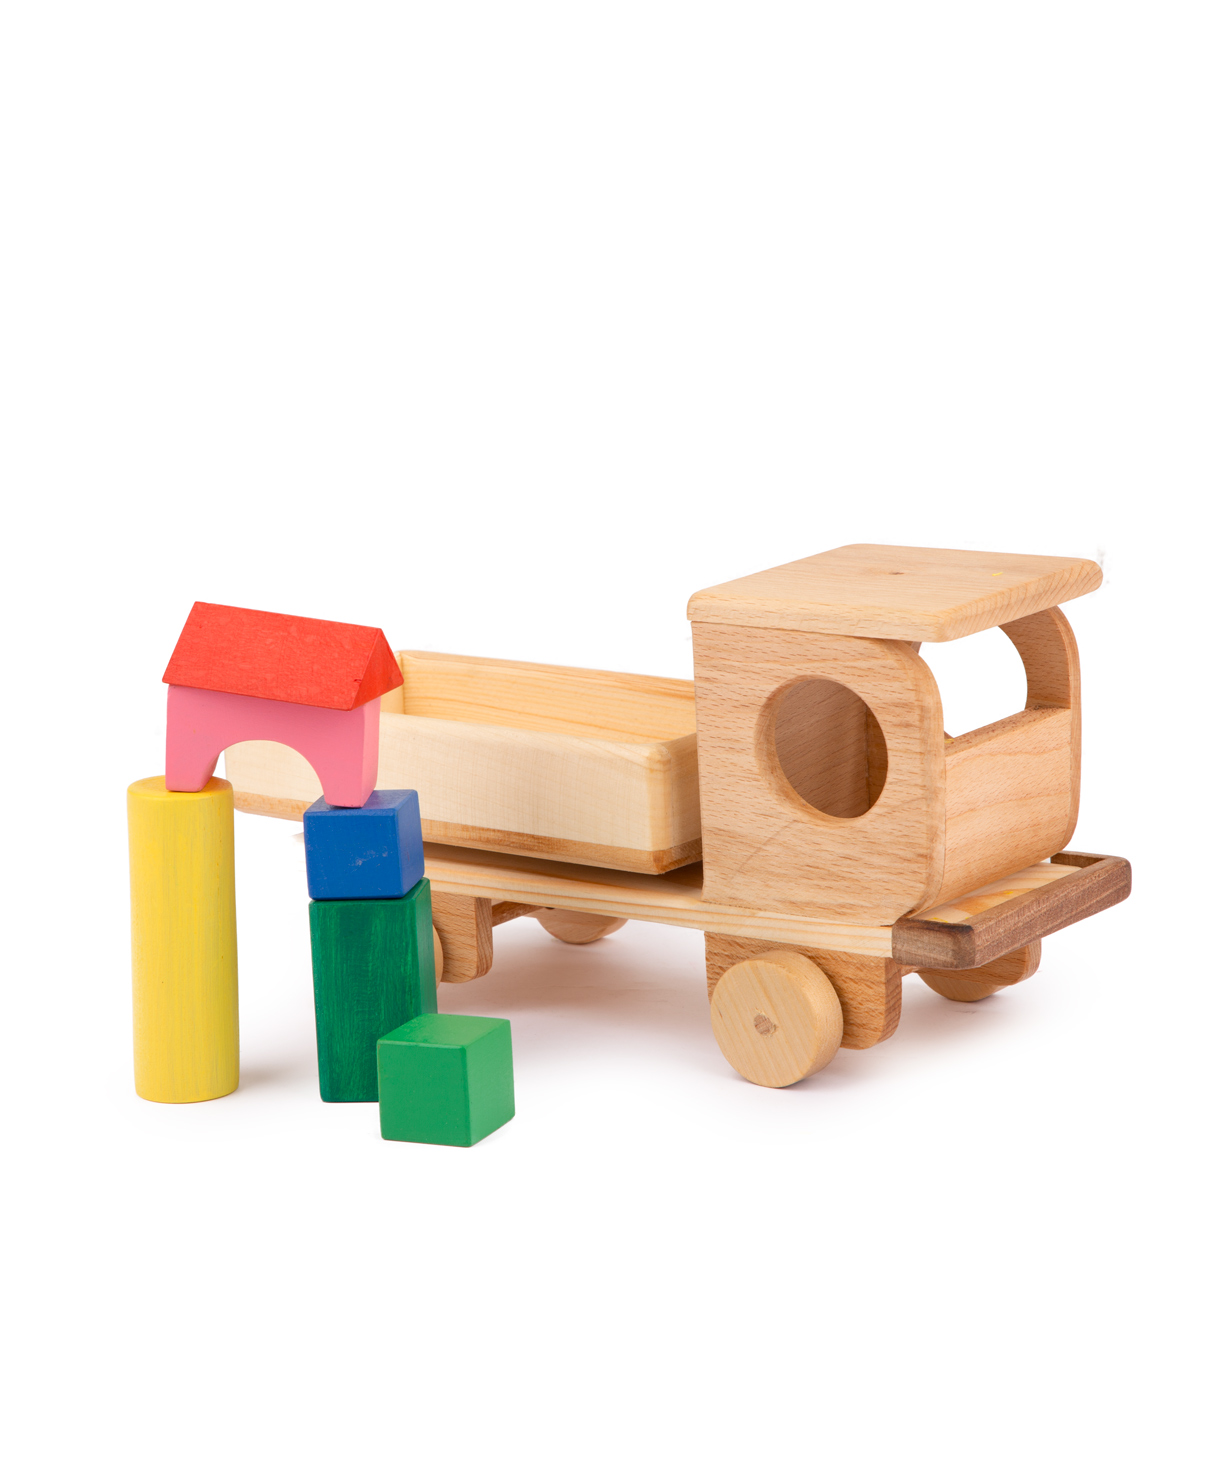 Խաղալիք «Im wooden toys» ինքնաթափ մեքենա